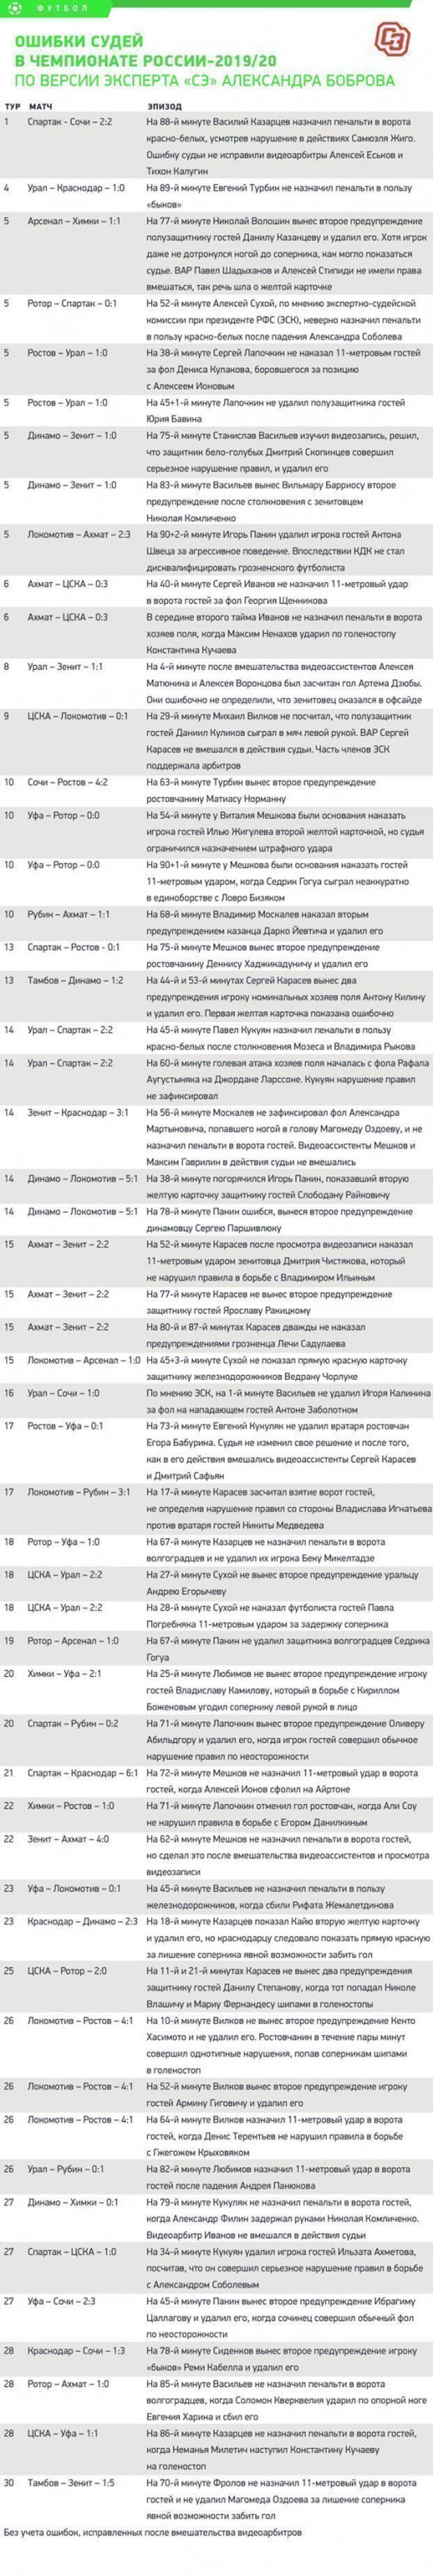 Ошибки судей в чемпионате России-2019/20. По версии эксперта «СЭ» Александра Боброва.